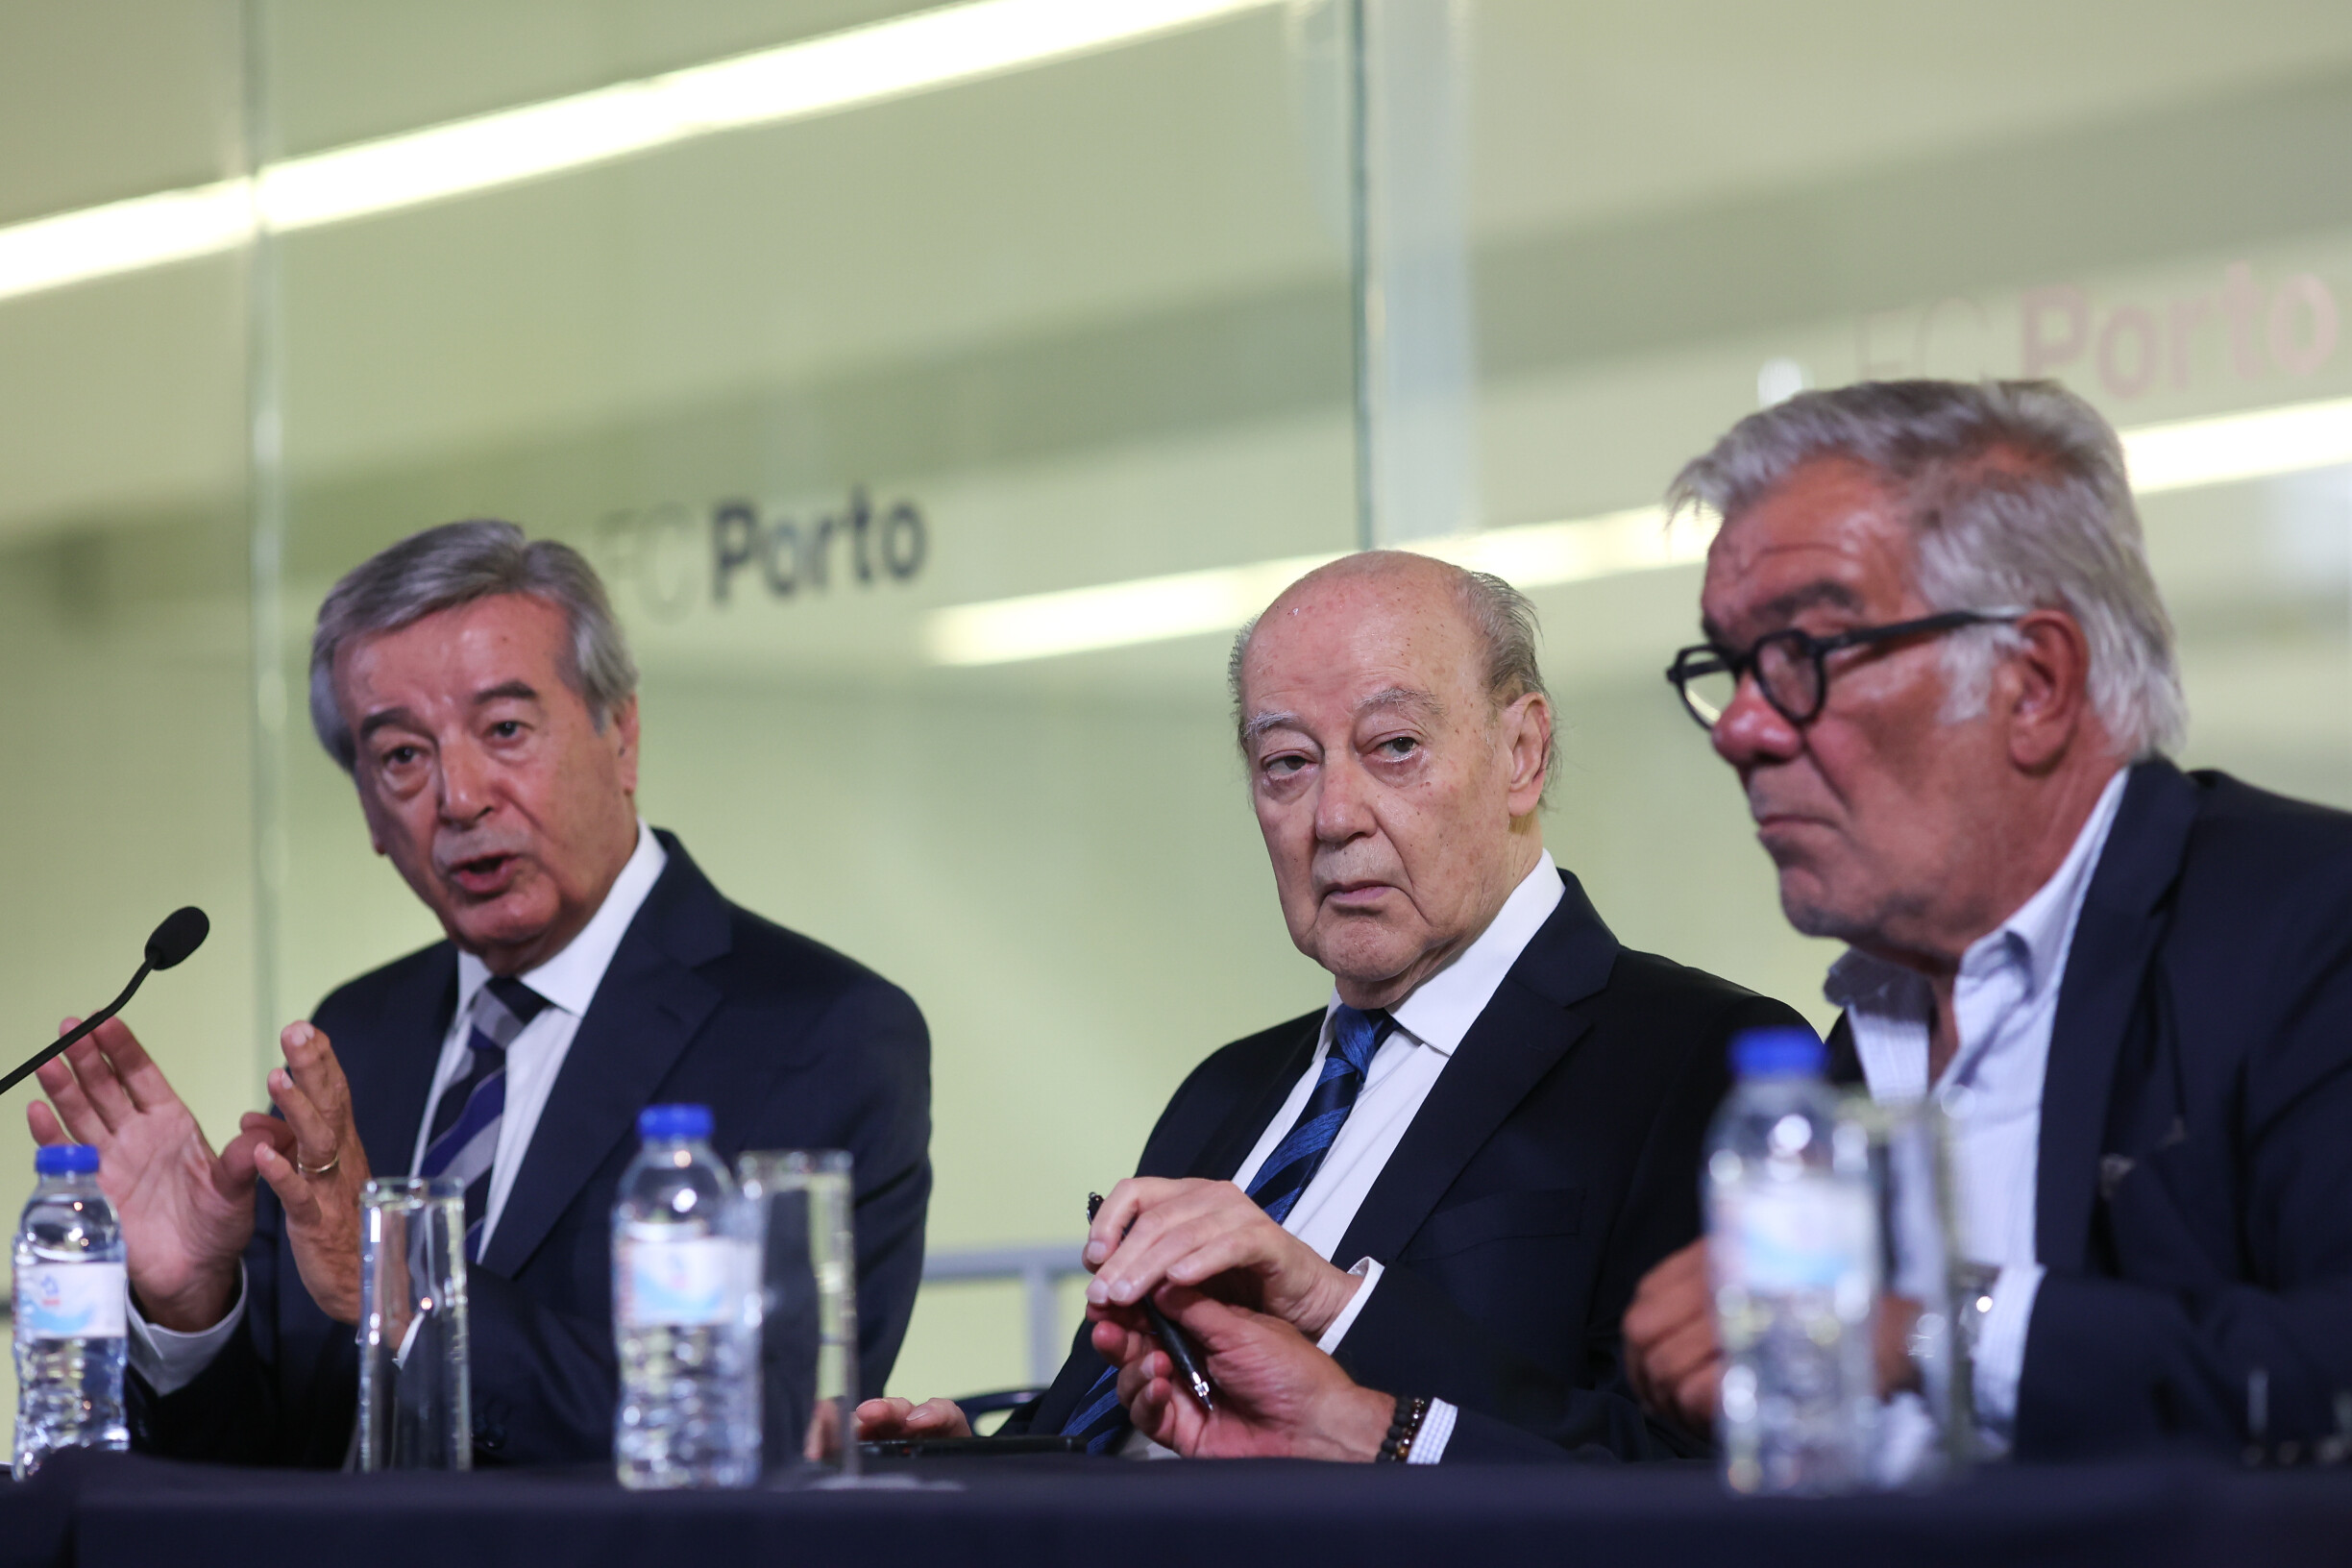 Onde a Liga portuguesa é campeã de desigualdades